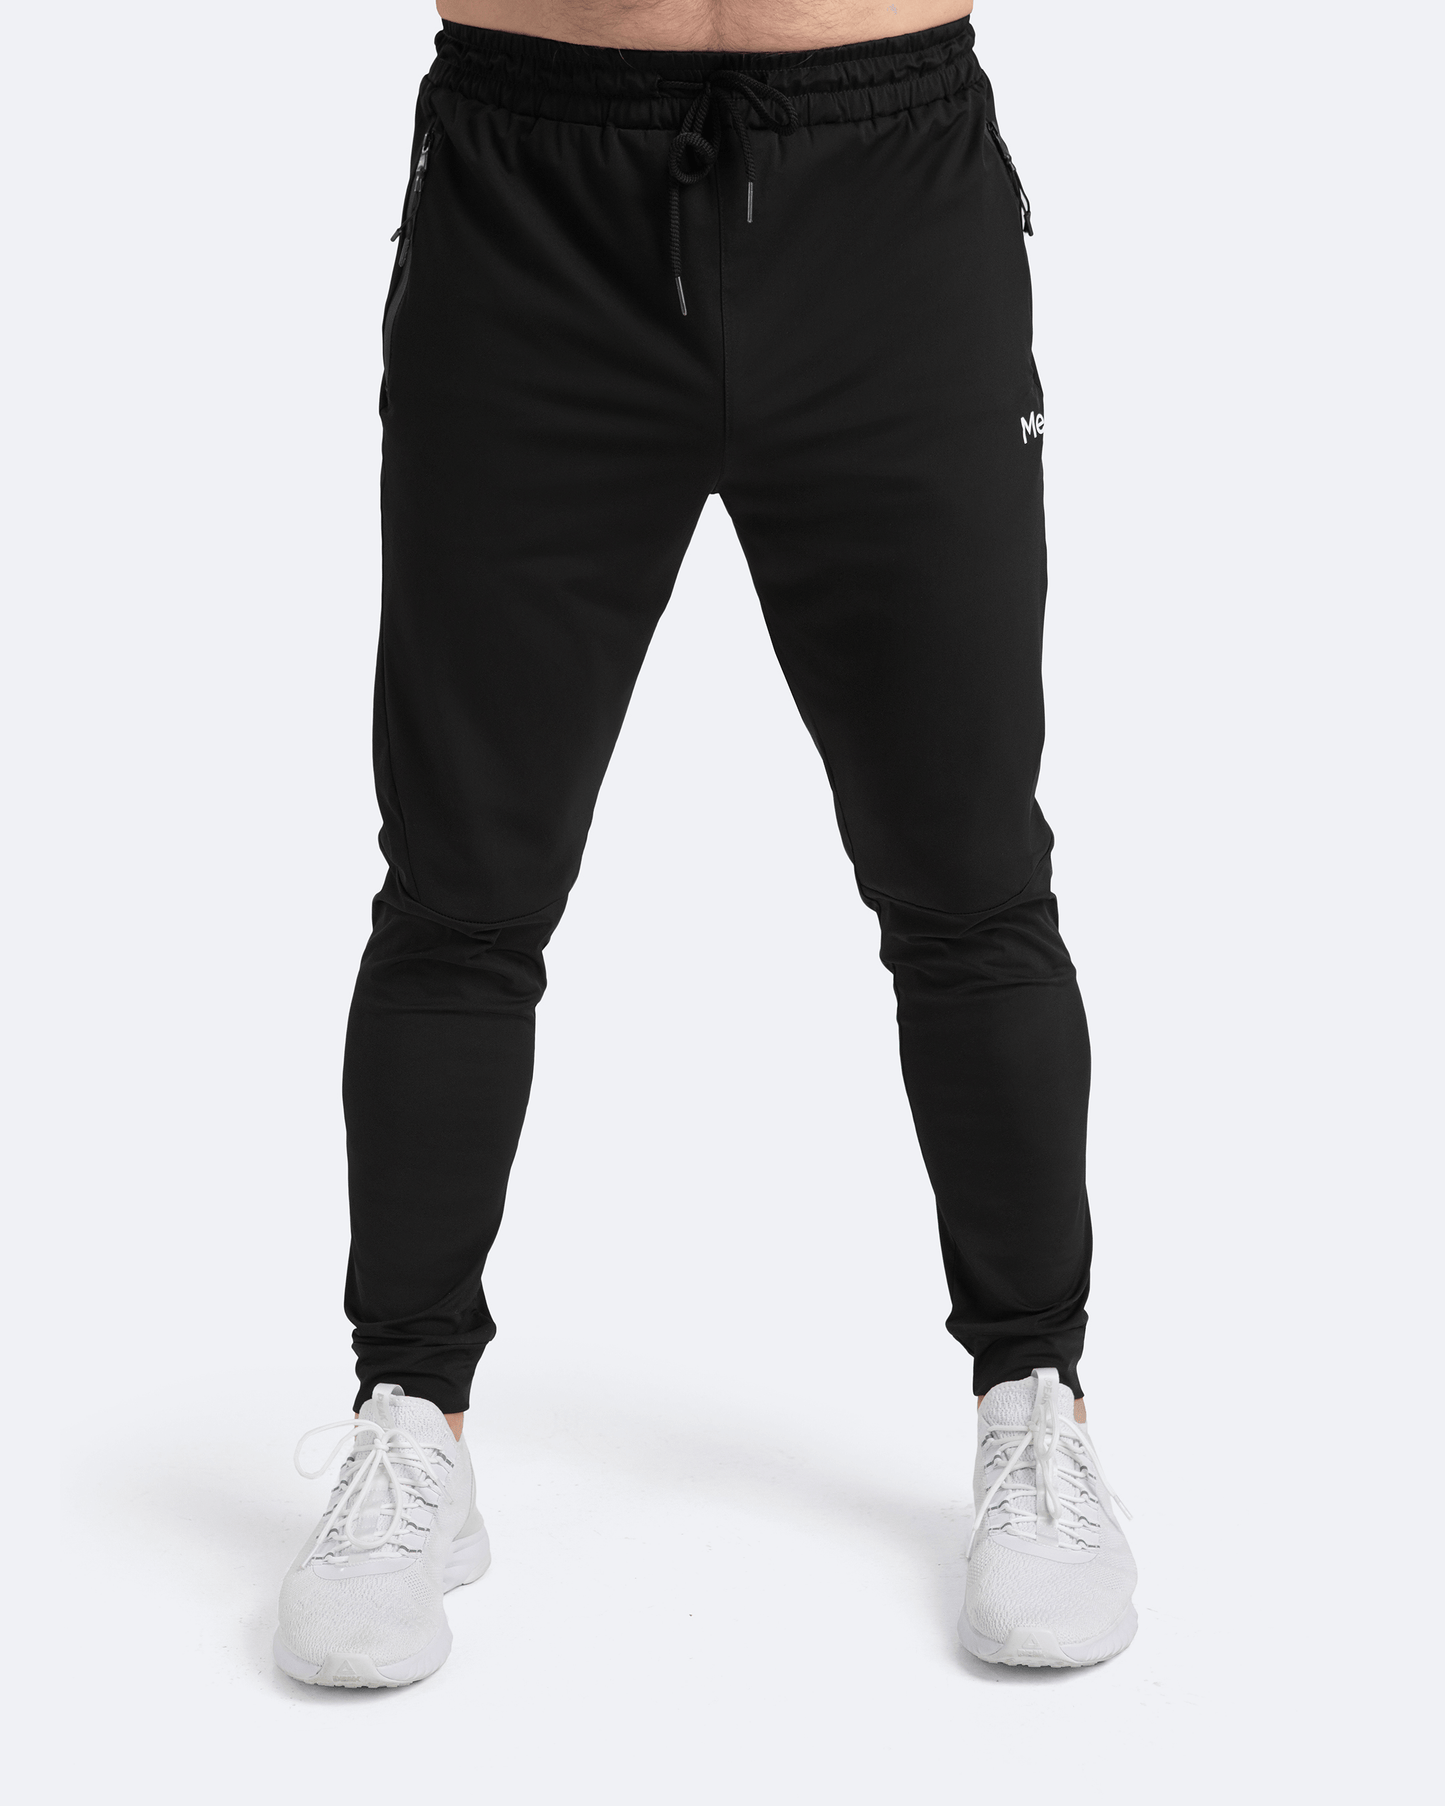 Pantaloni athleisure per jogging color nero intenso